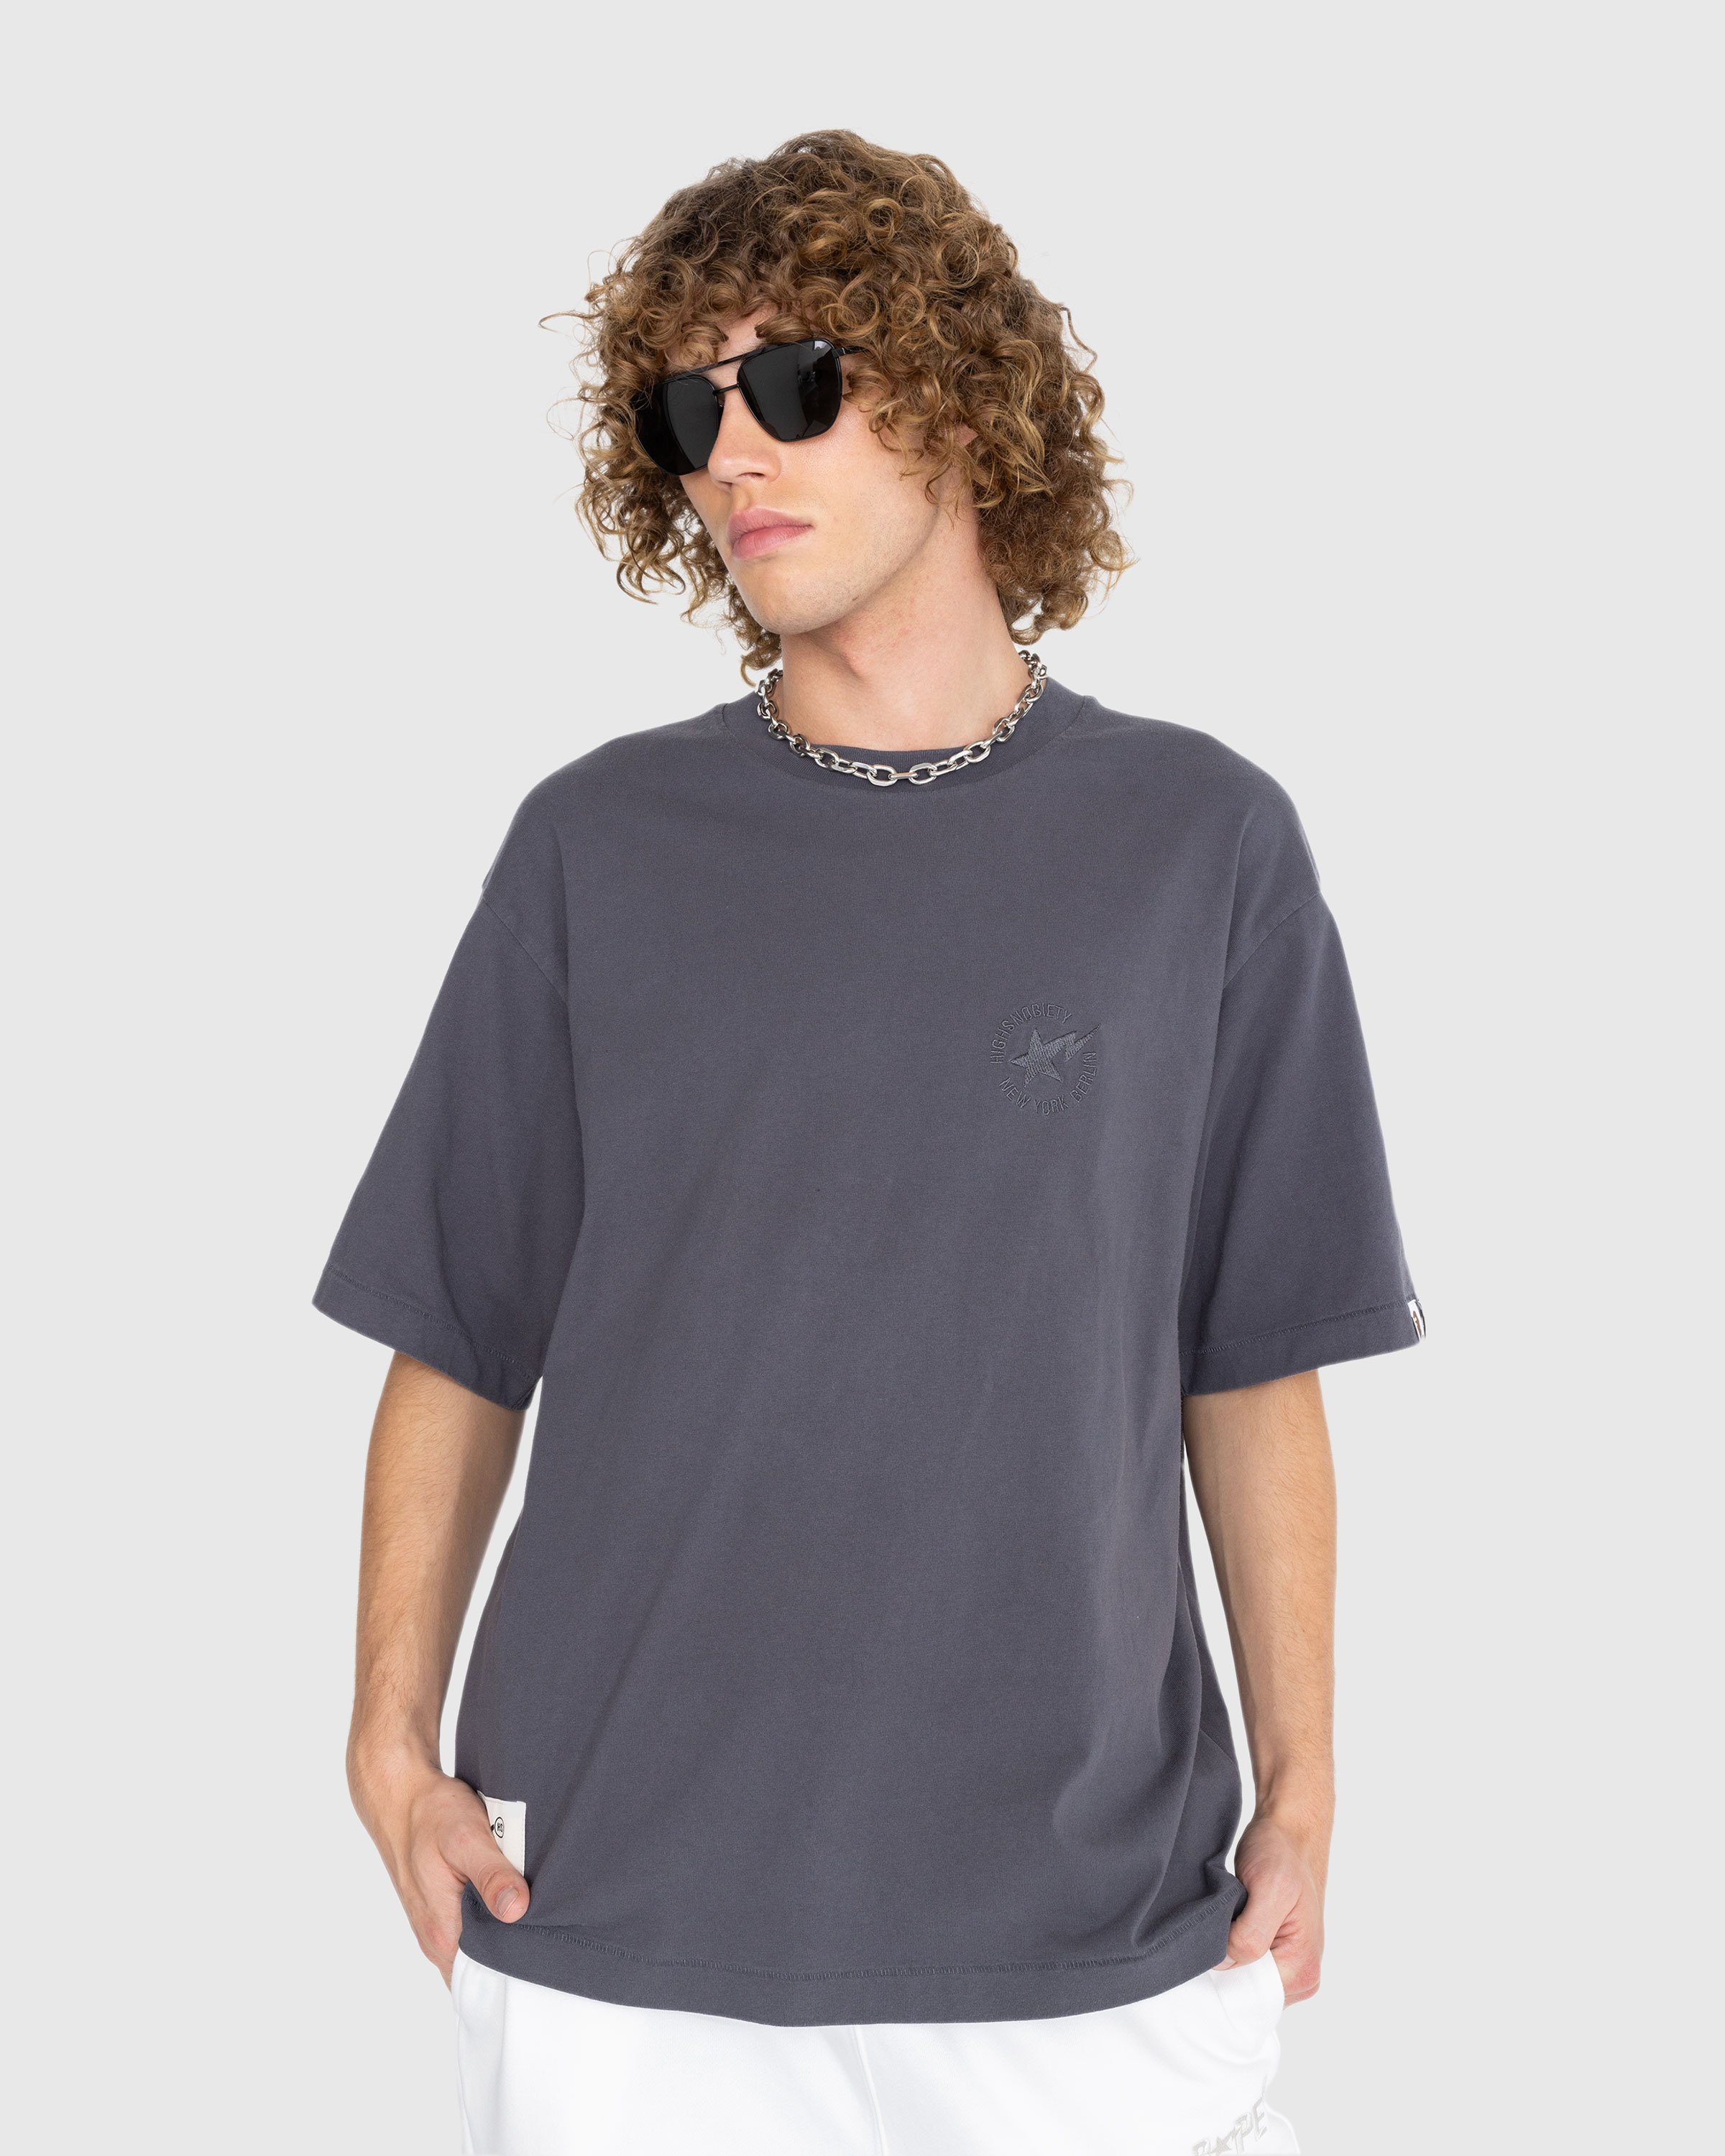 BAPE x Highsnobiety - Heavy Washed T-Shirt Charcoal - Clothing - Grey - Image 2